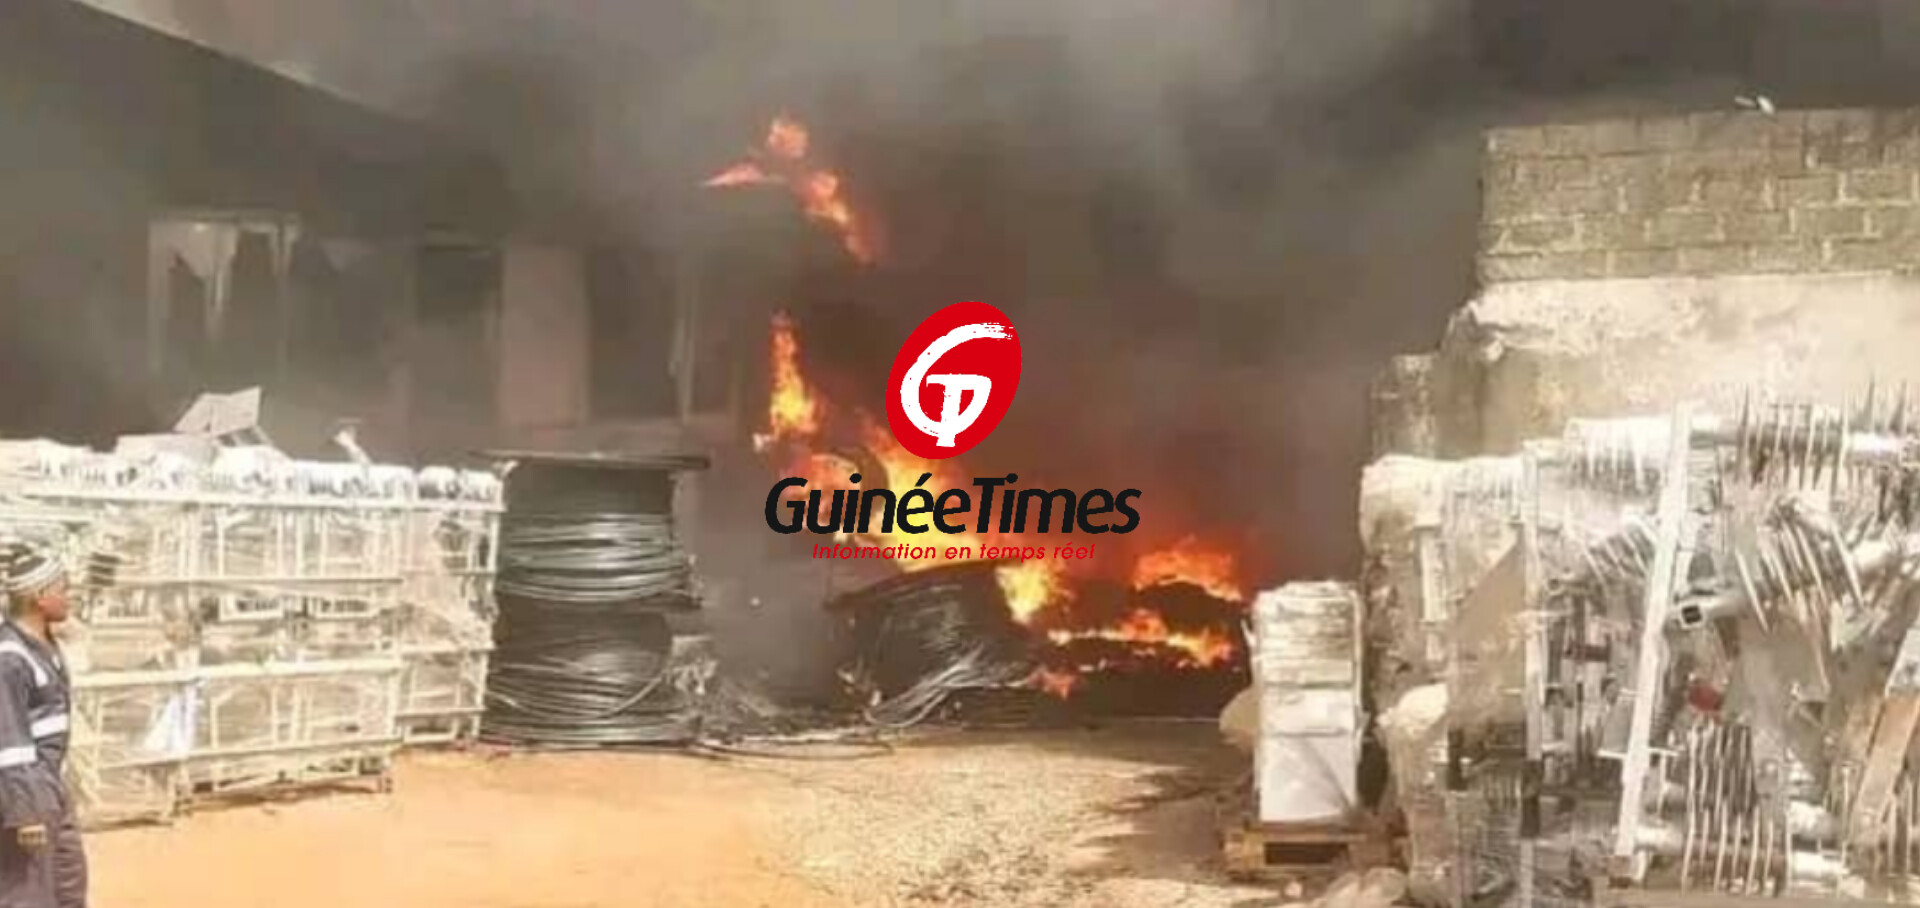 Incendie dans un entrepôt d’EDG à Hamdallaye : plusieurs matériels sont partis en fumée selon le DG par intérim